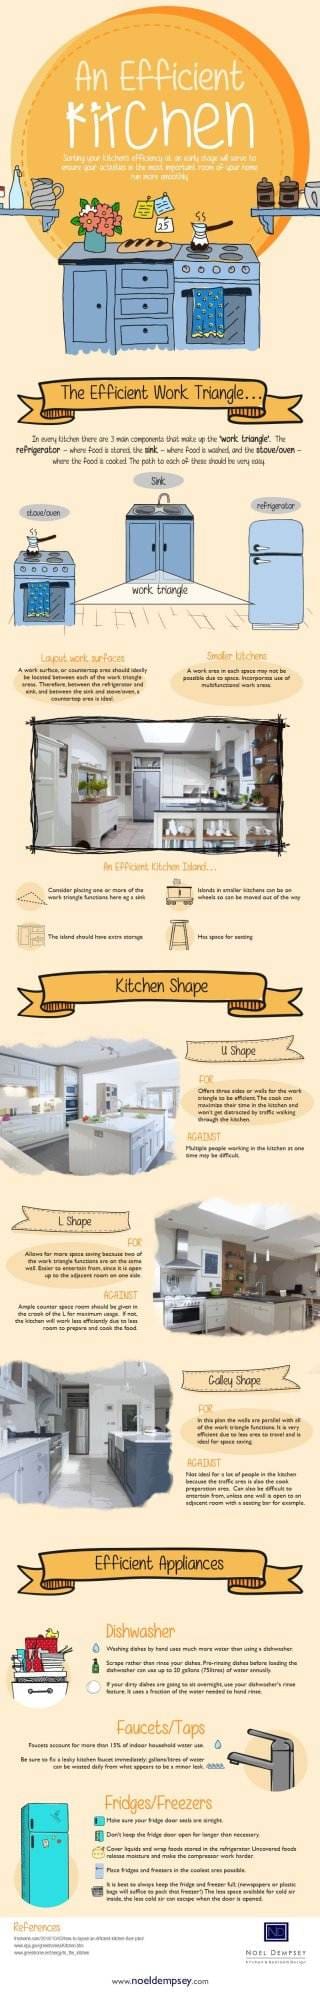 An-Efficient-Kitchen-Infographic